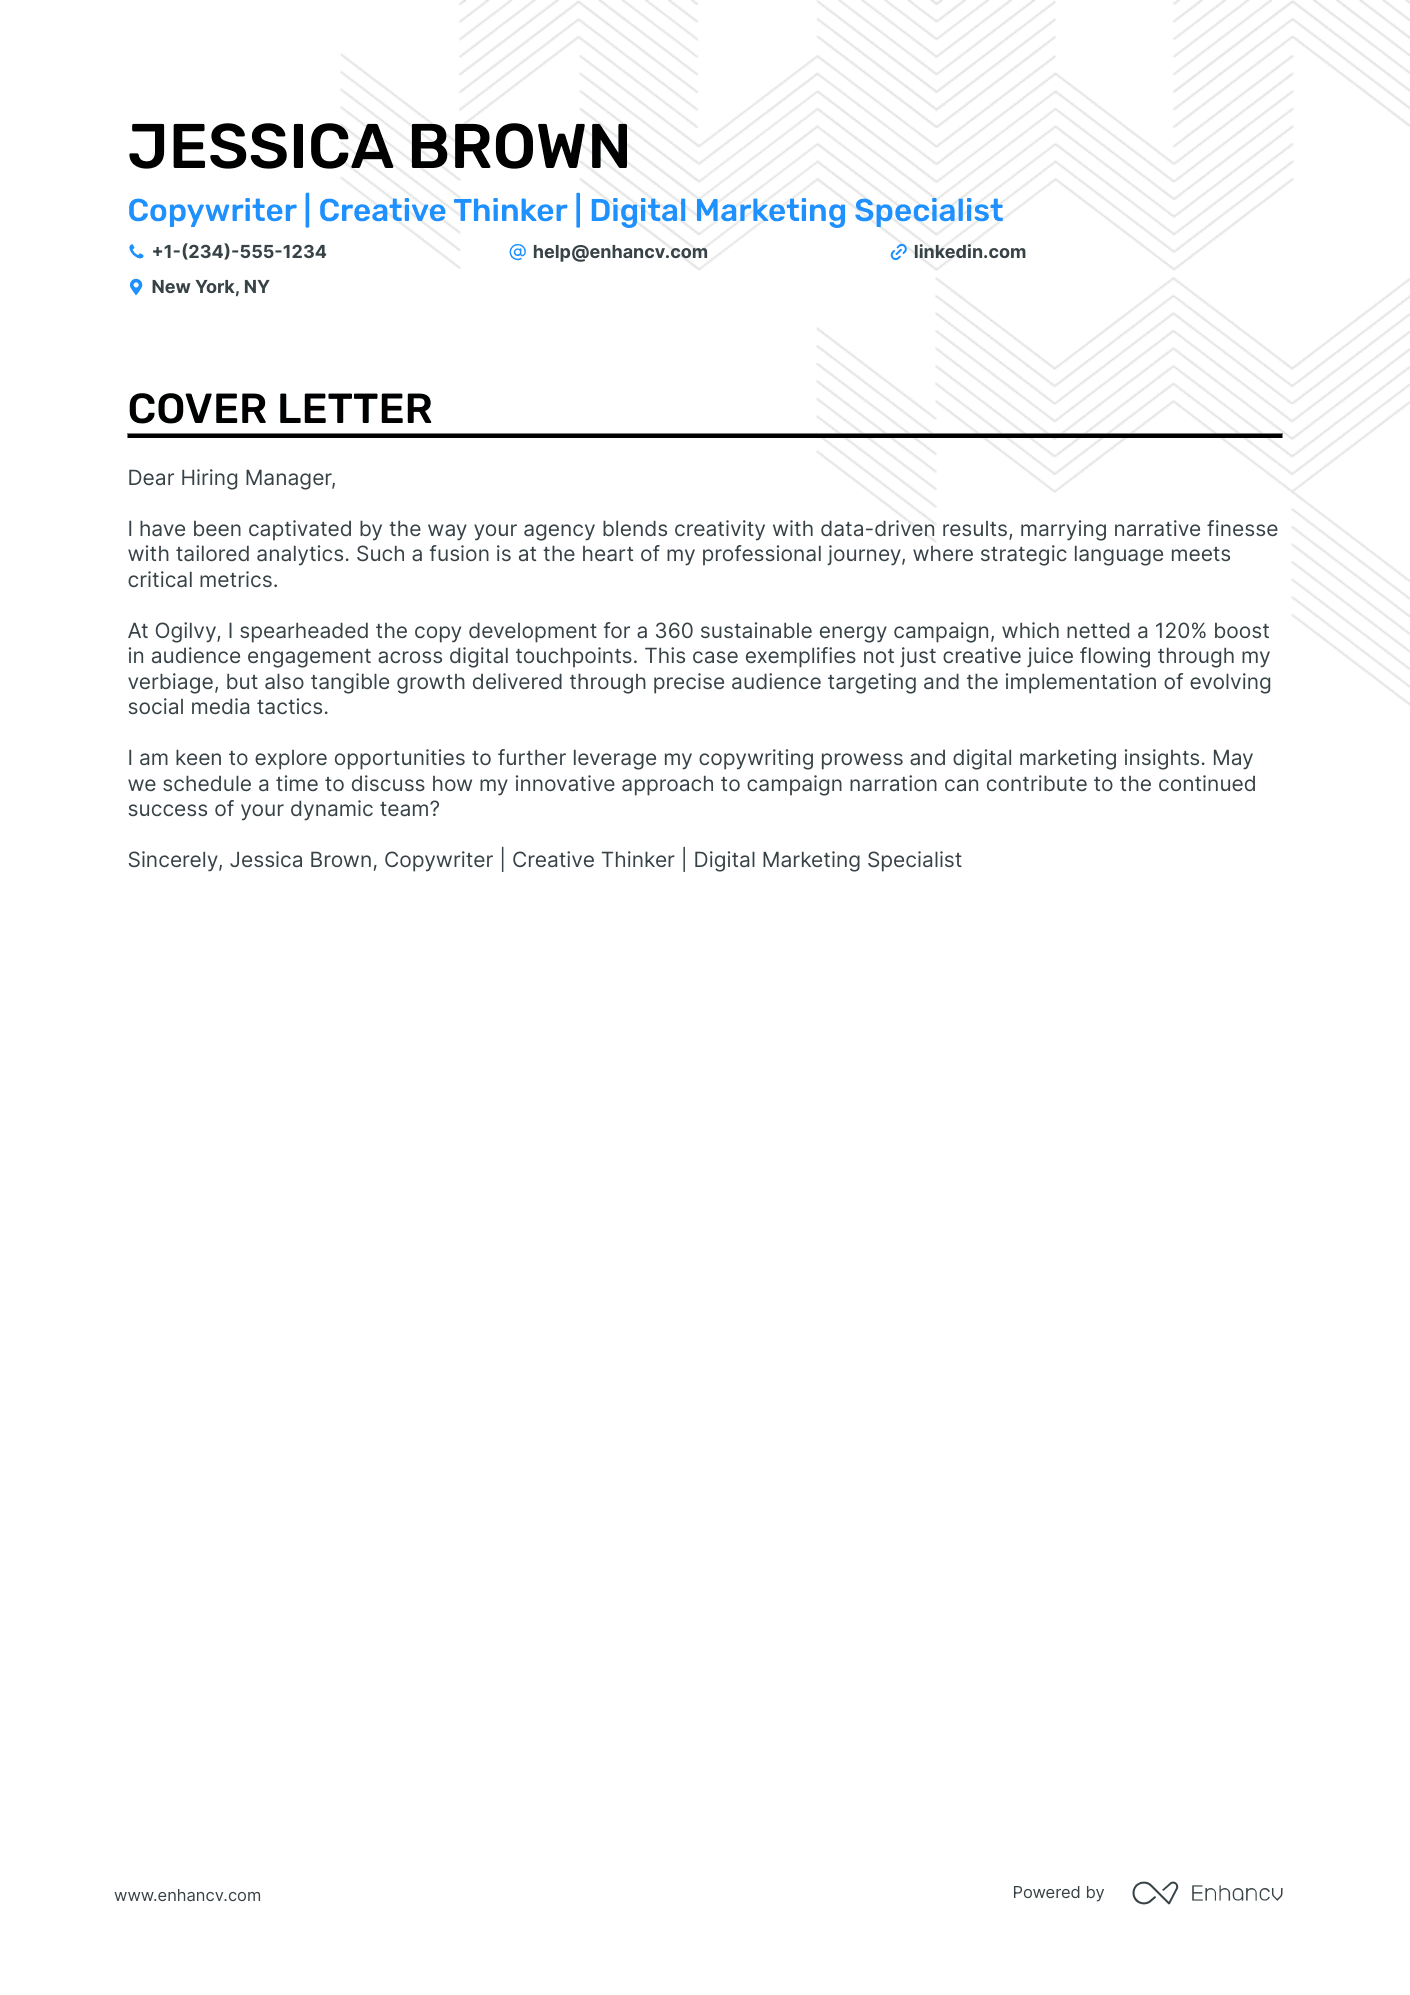 Copywriter cover letter